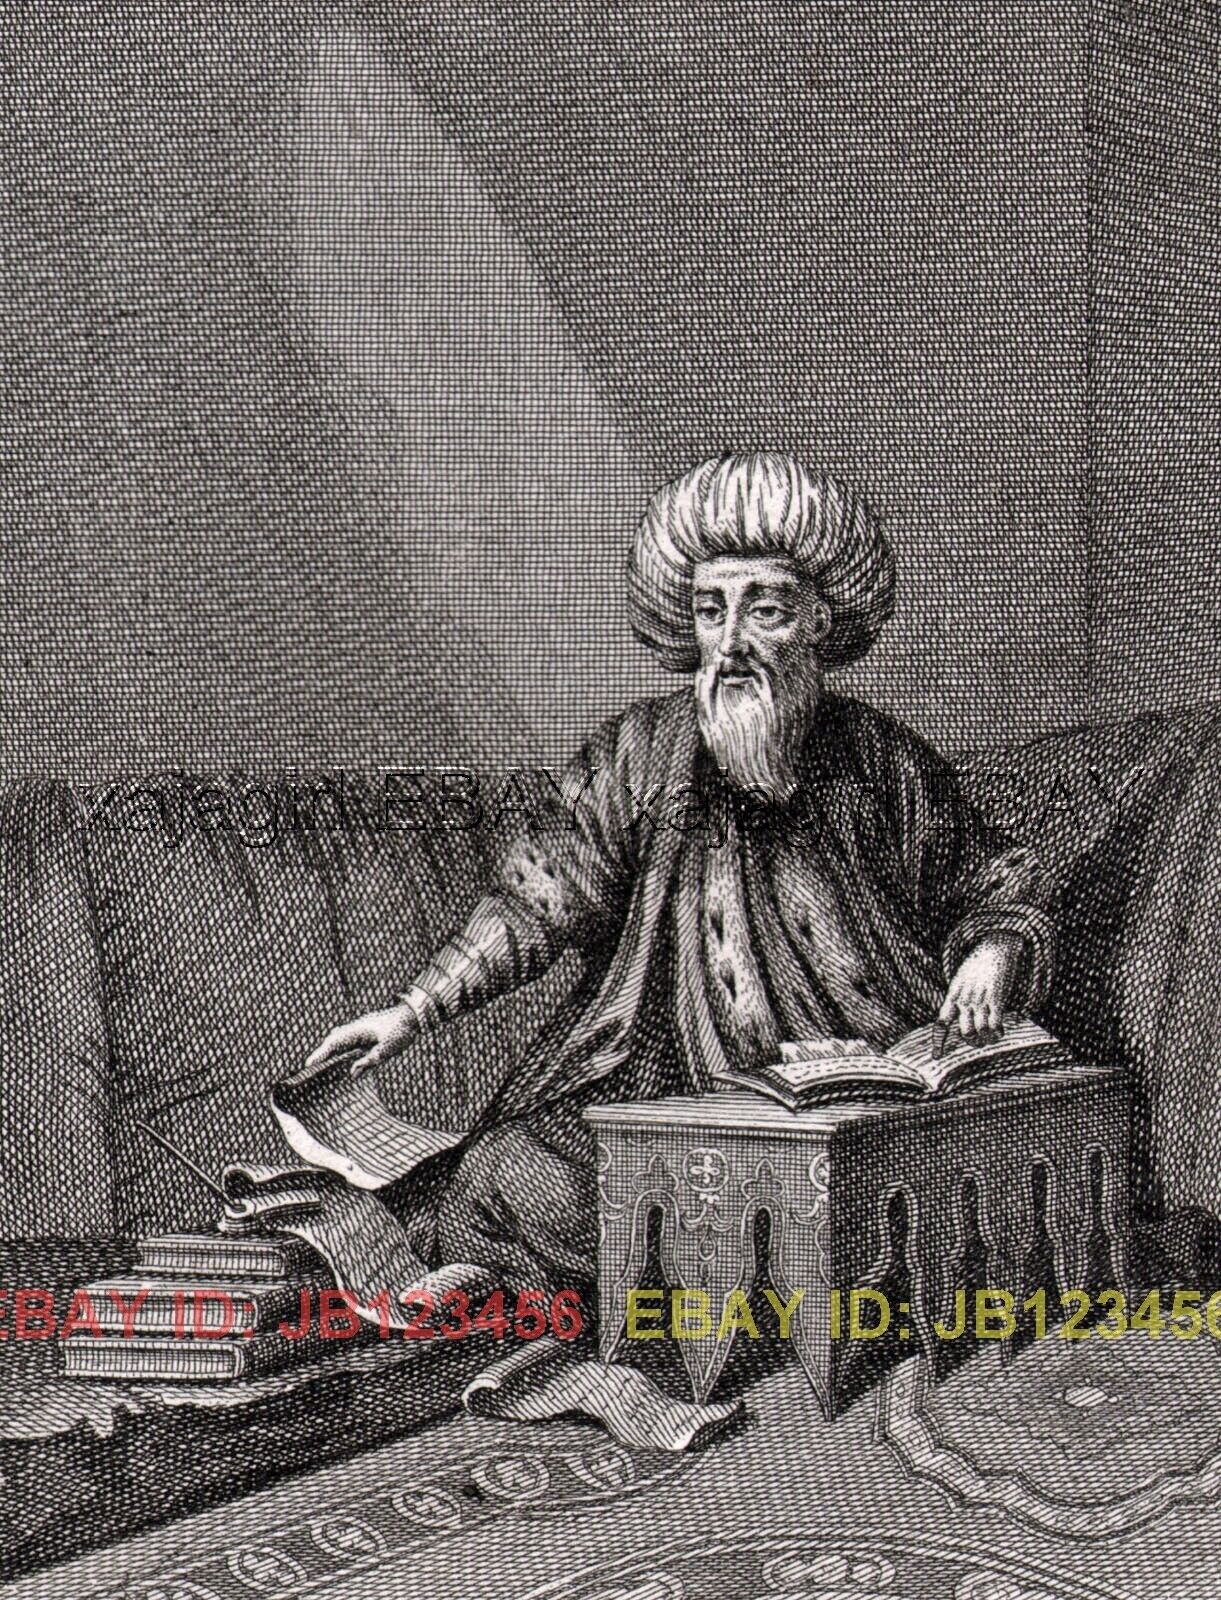 RELIGION Islam Muslim Effendi Scholar or Teacher, Antique 1730s Copper Engraving